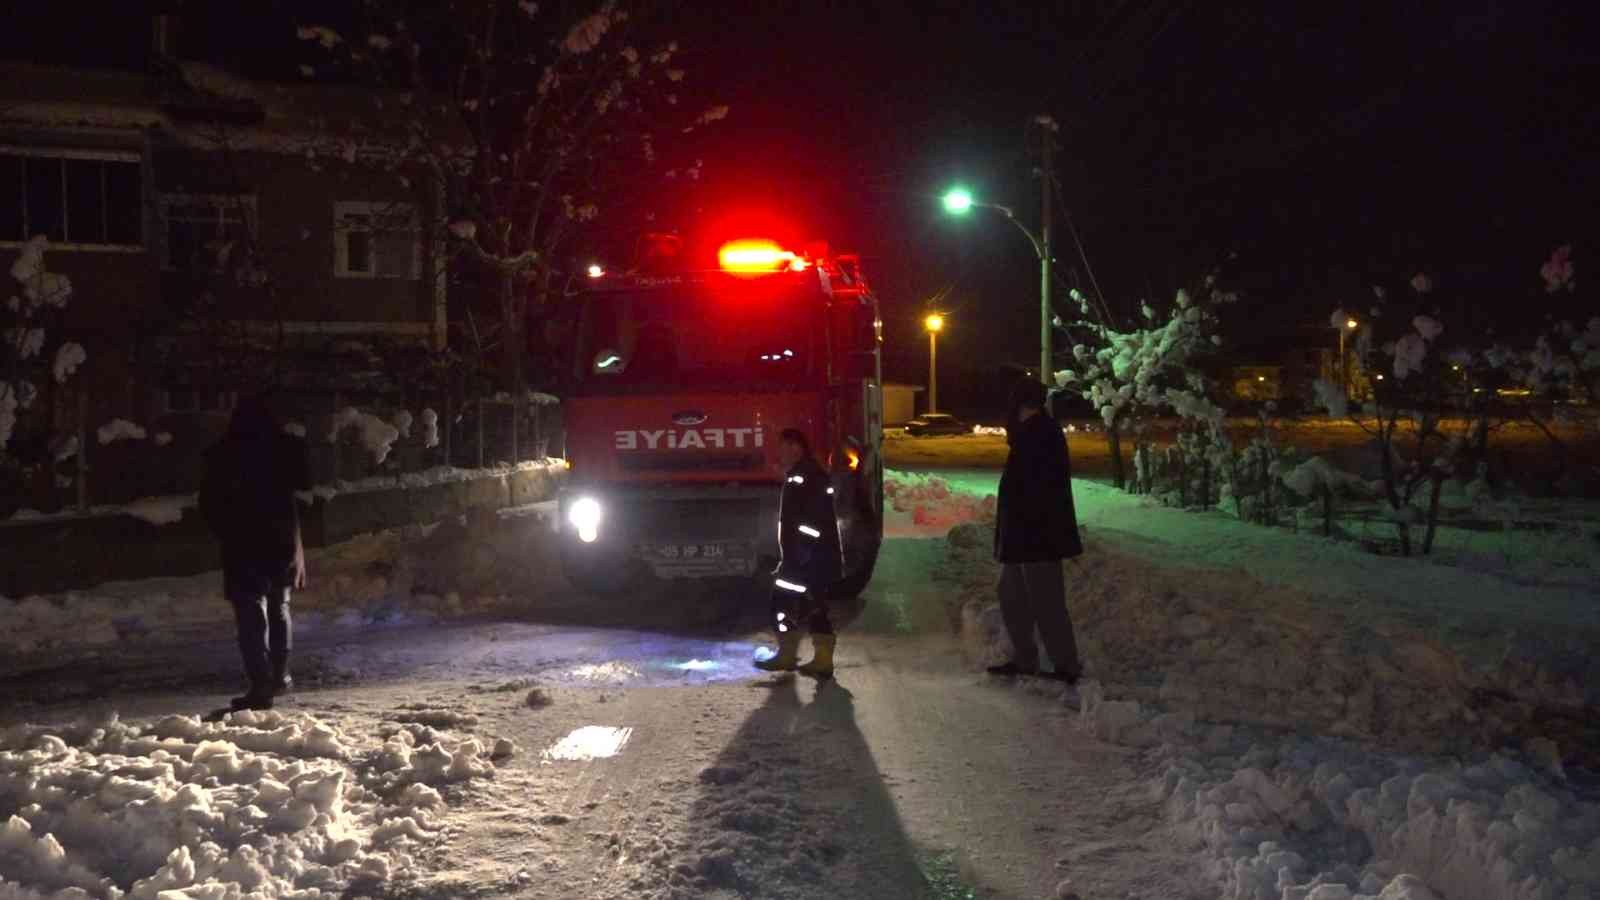 Amasya’da ev yangını: 6 kişilik aile ölümden döndü #amasya